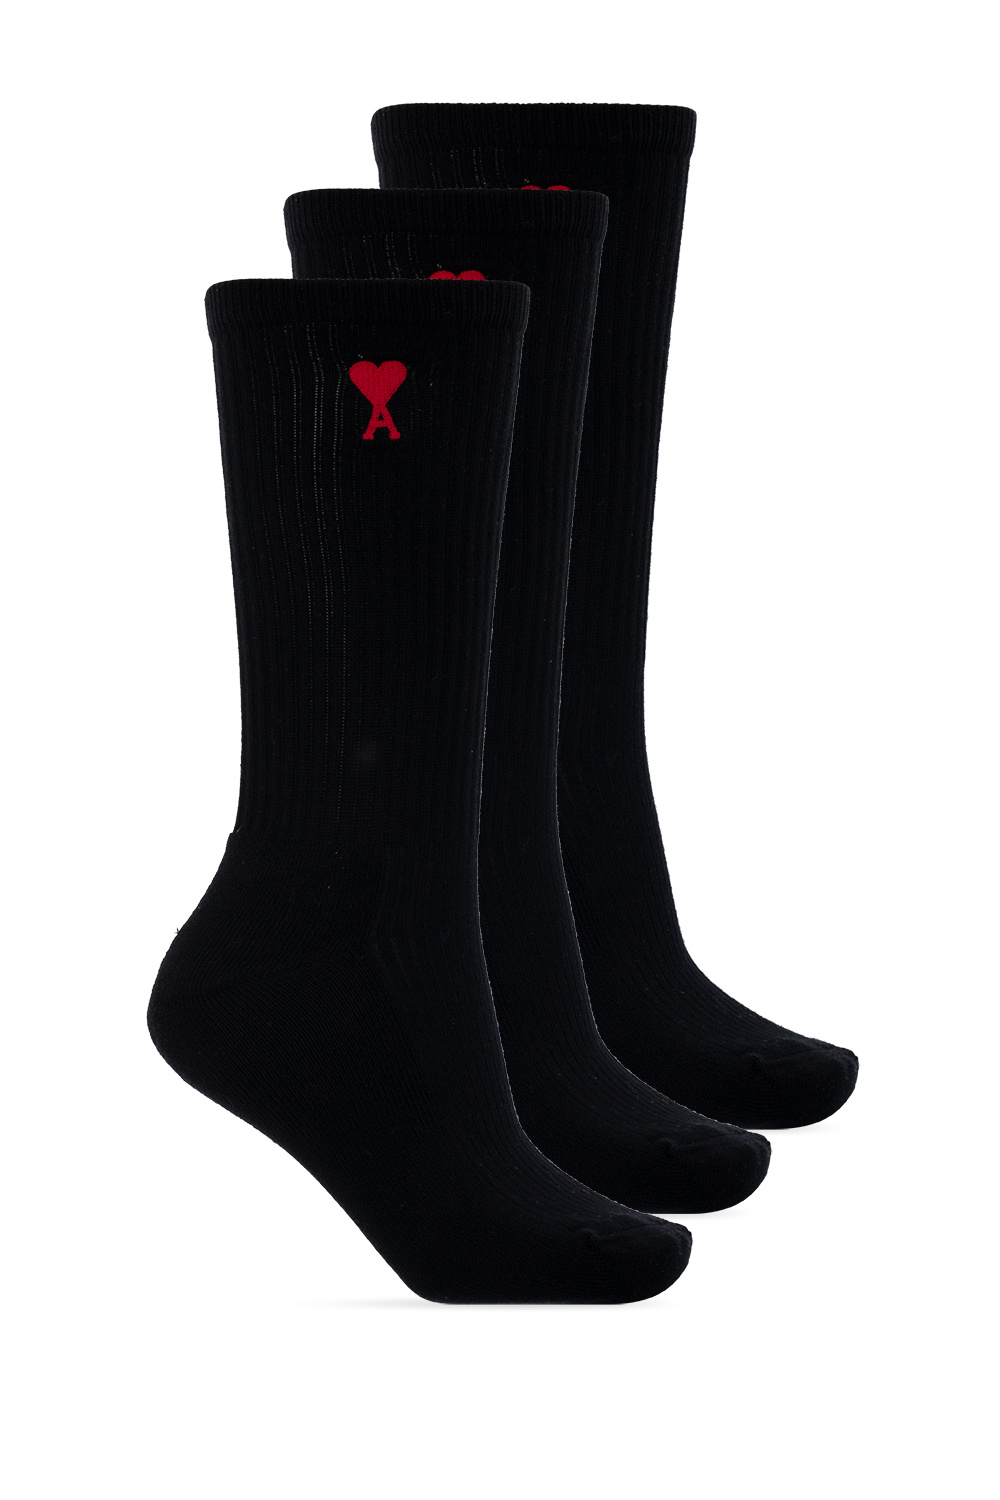 Ami Alexandre Mattiussi Branded socks 3-pack | Women's Clothing | Vitkac